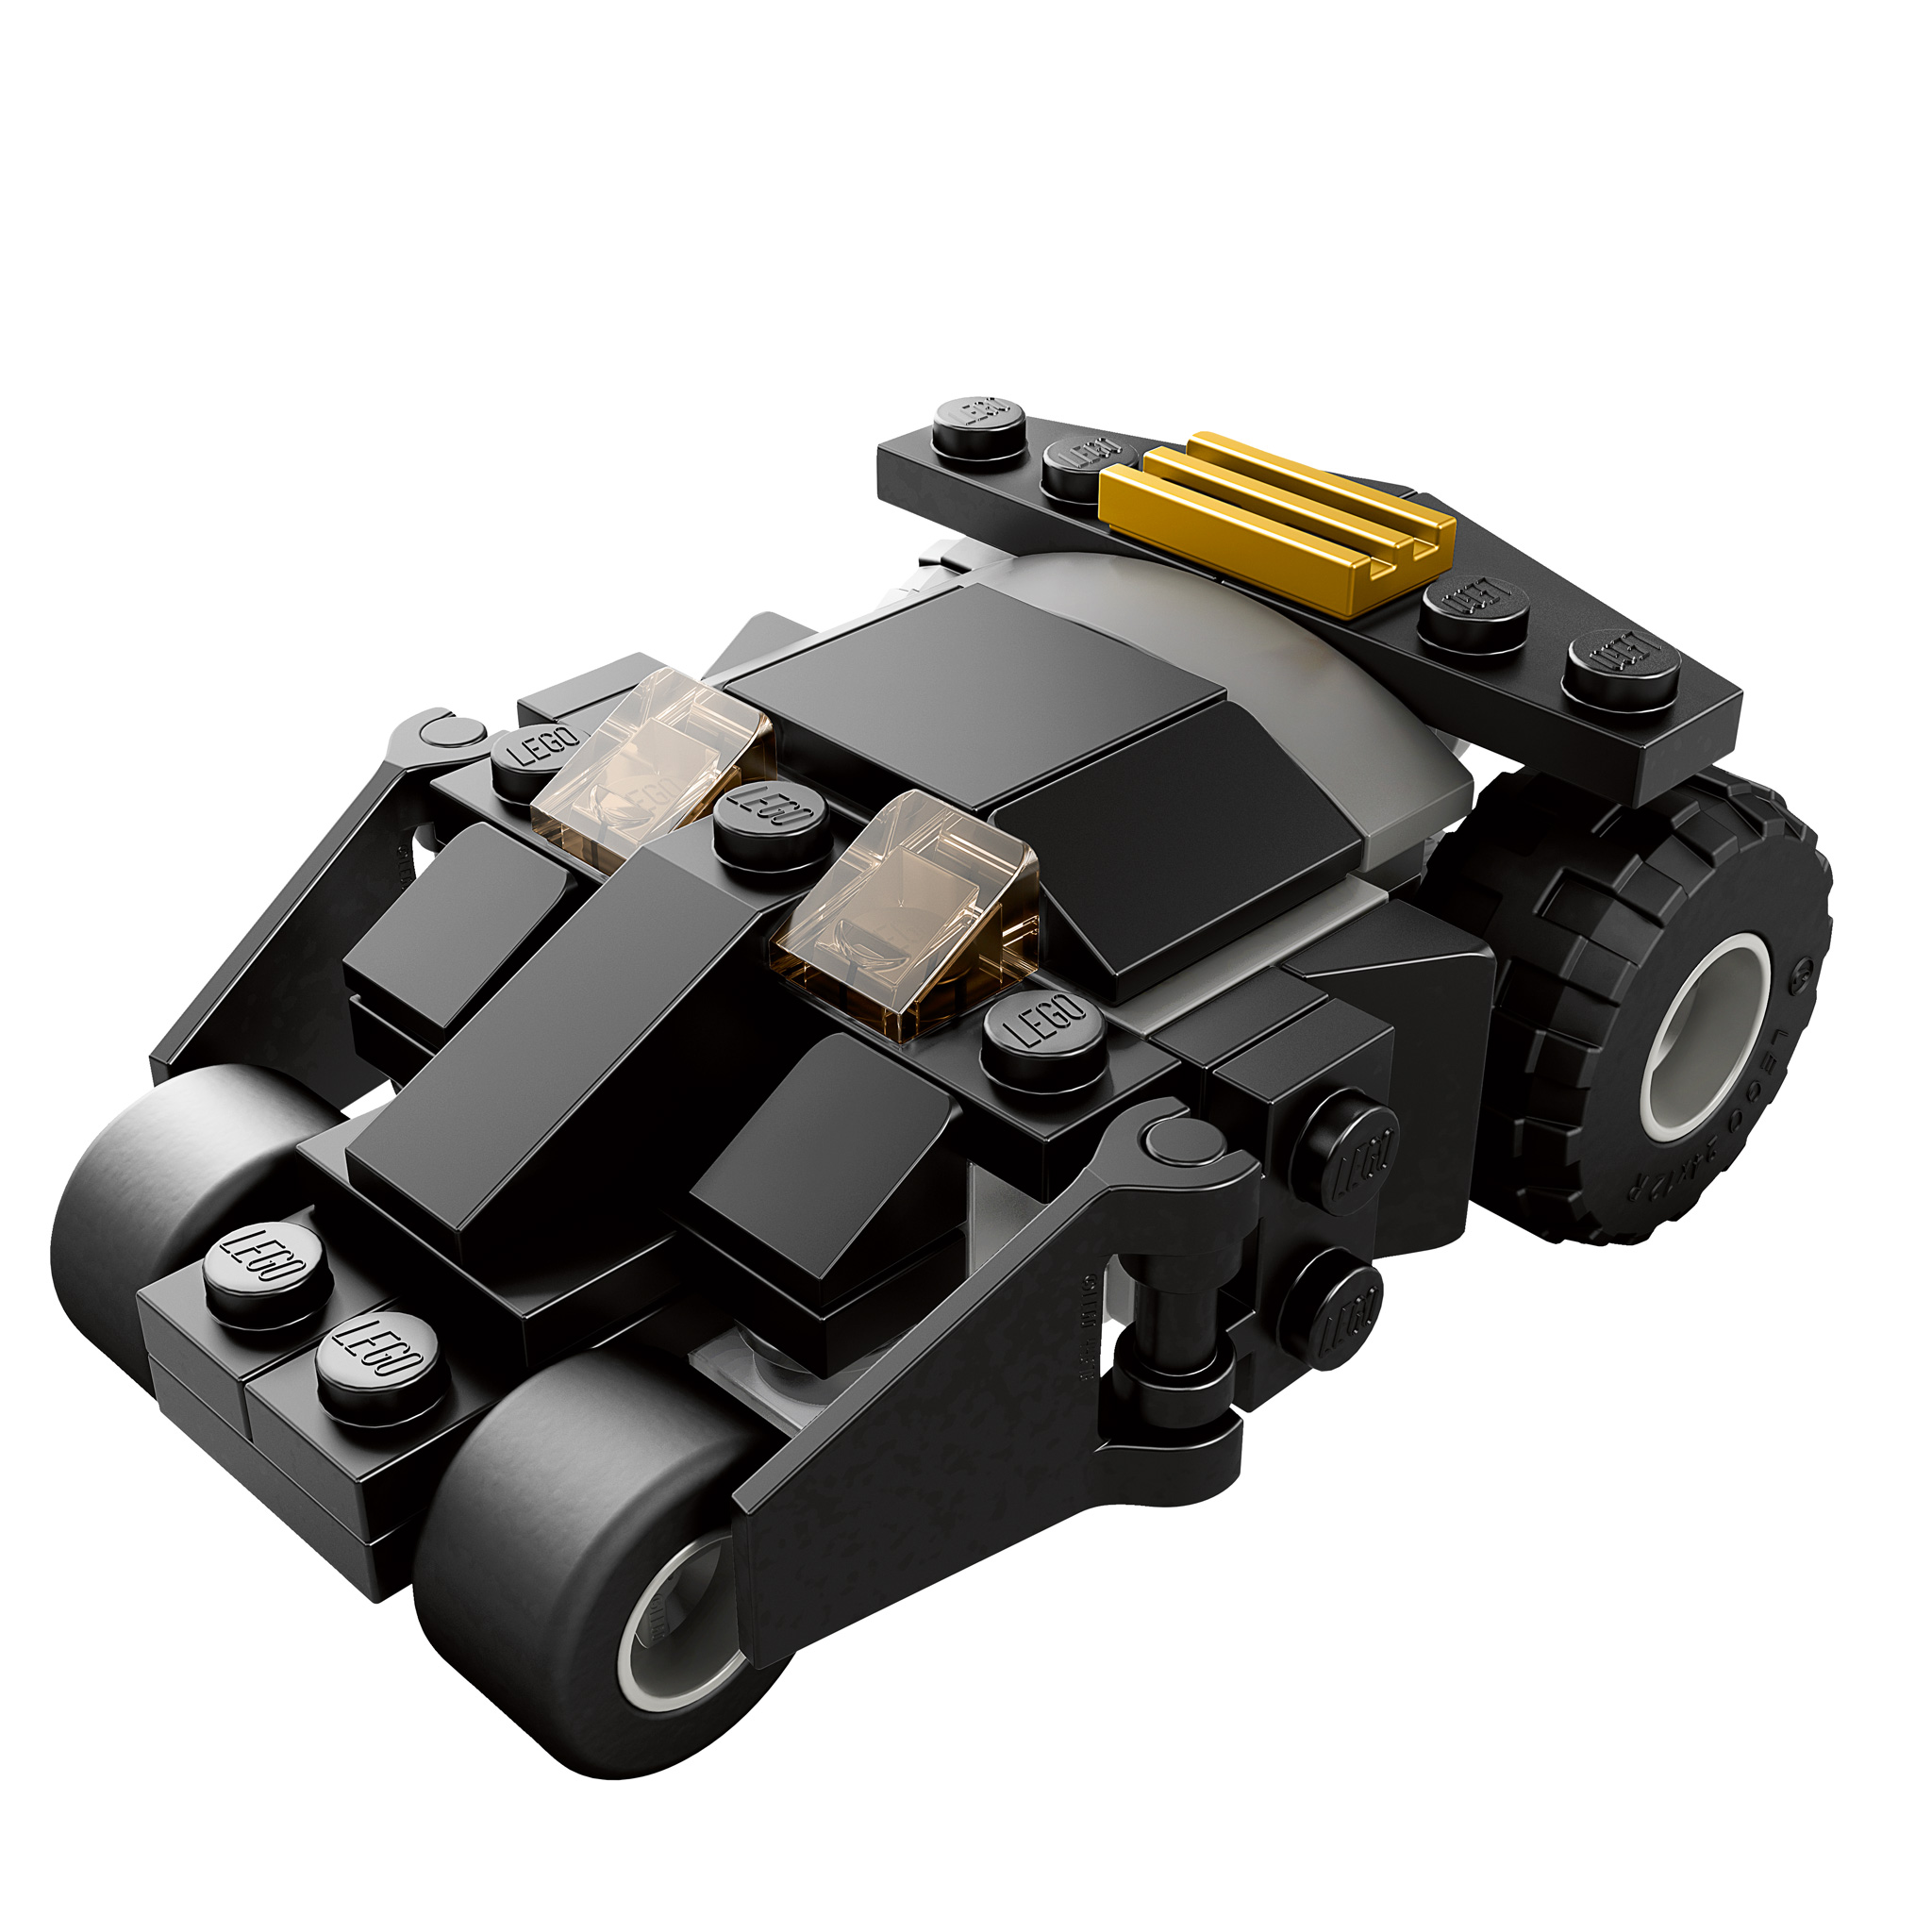 Lego Batman 3 pre-order Walmart Tumbler Miniset